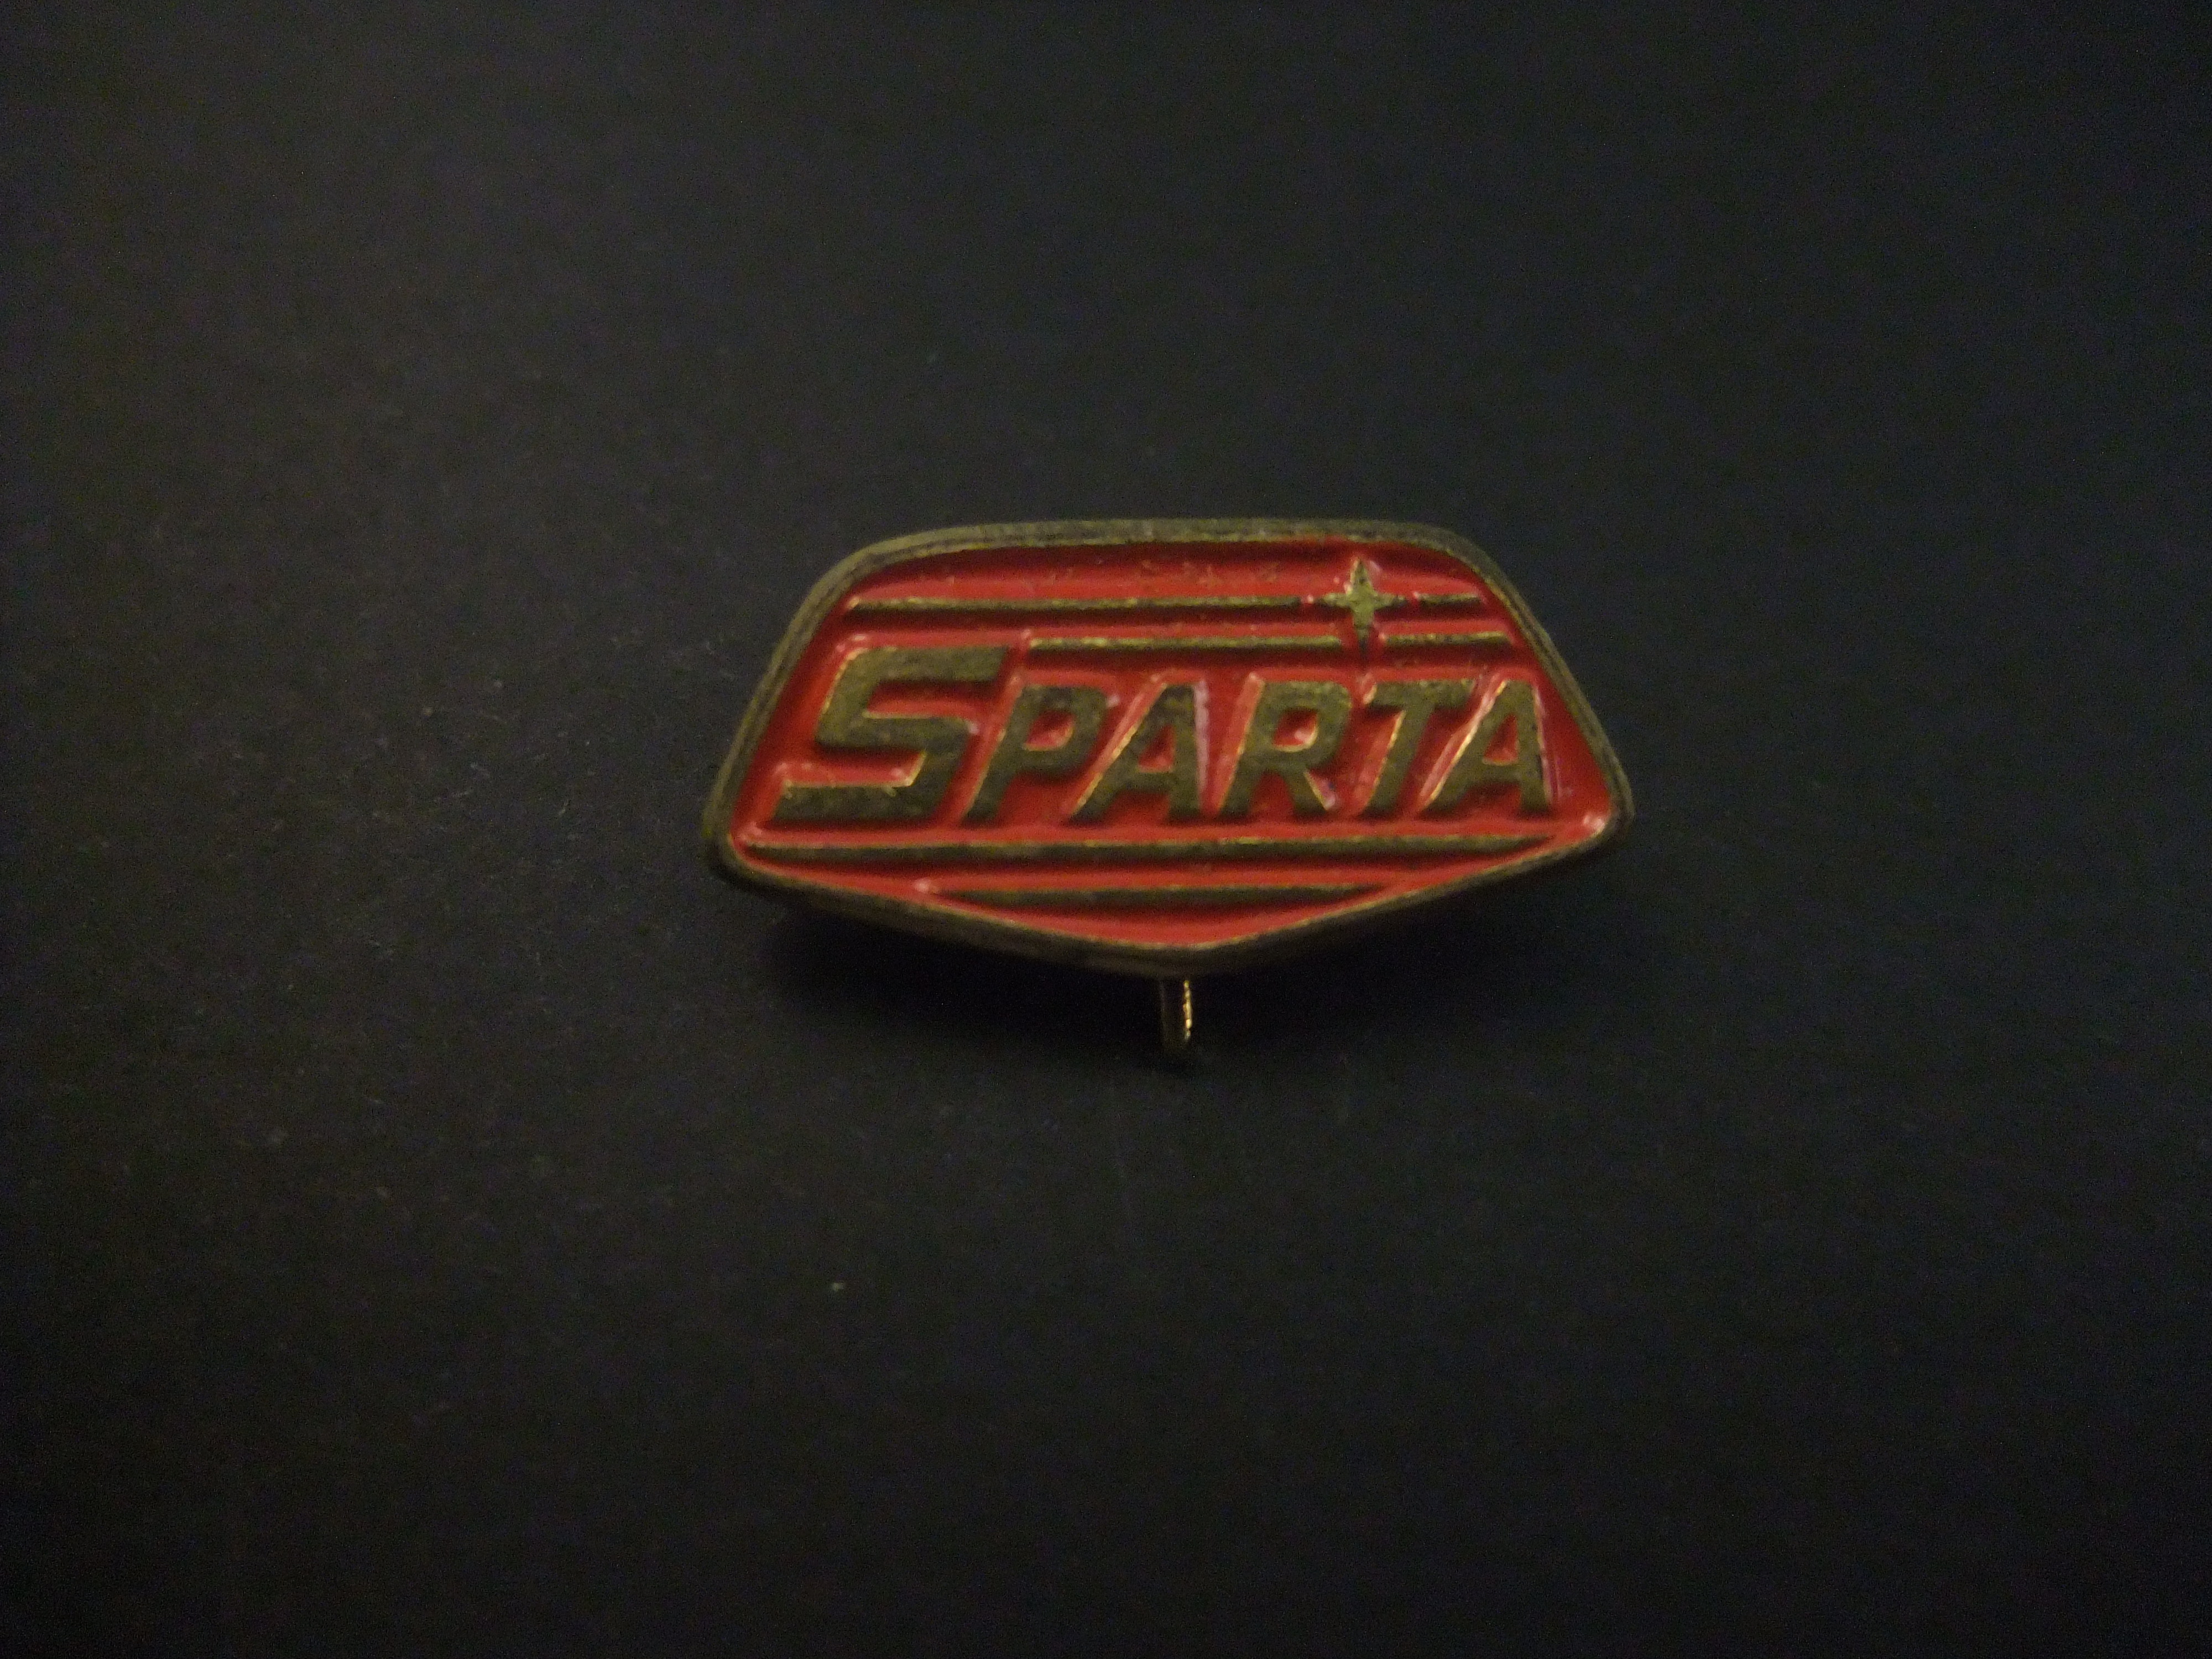 Sparta brommer logo